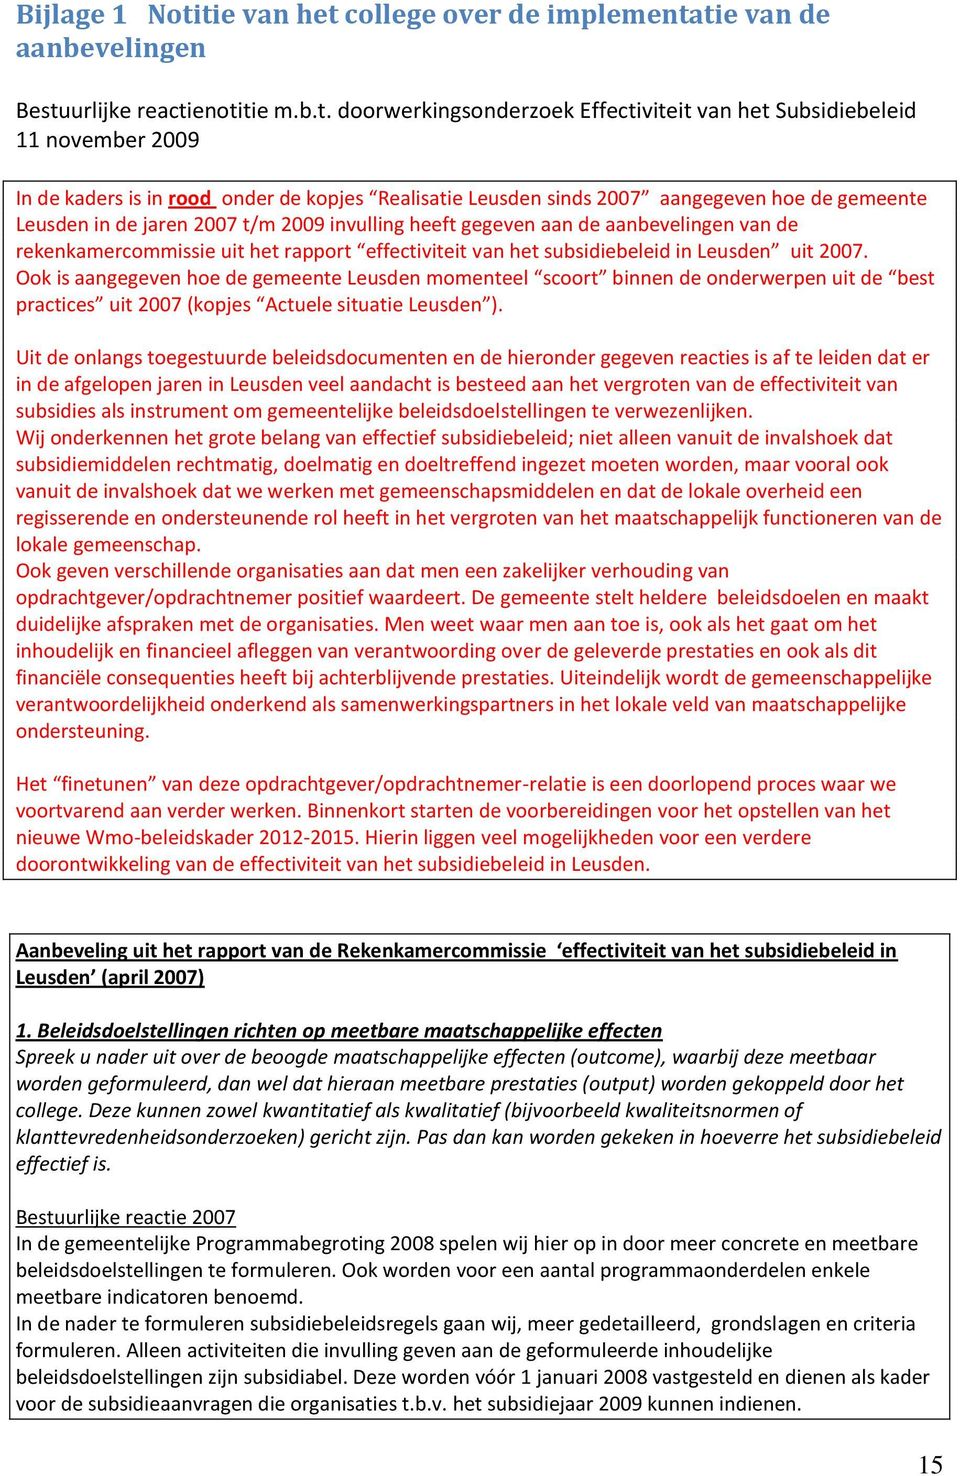 onder de kopjes Realisatie Leusden sinds 2007 aangegeven hoe de gemeente Leusden in de jaren 2007 t/m 2009 invulling heeft gegeven aan de aanbevelingen van de rekenkamercommissie uit het rapport